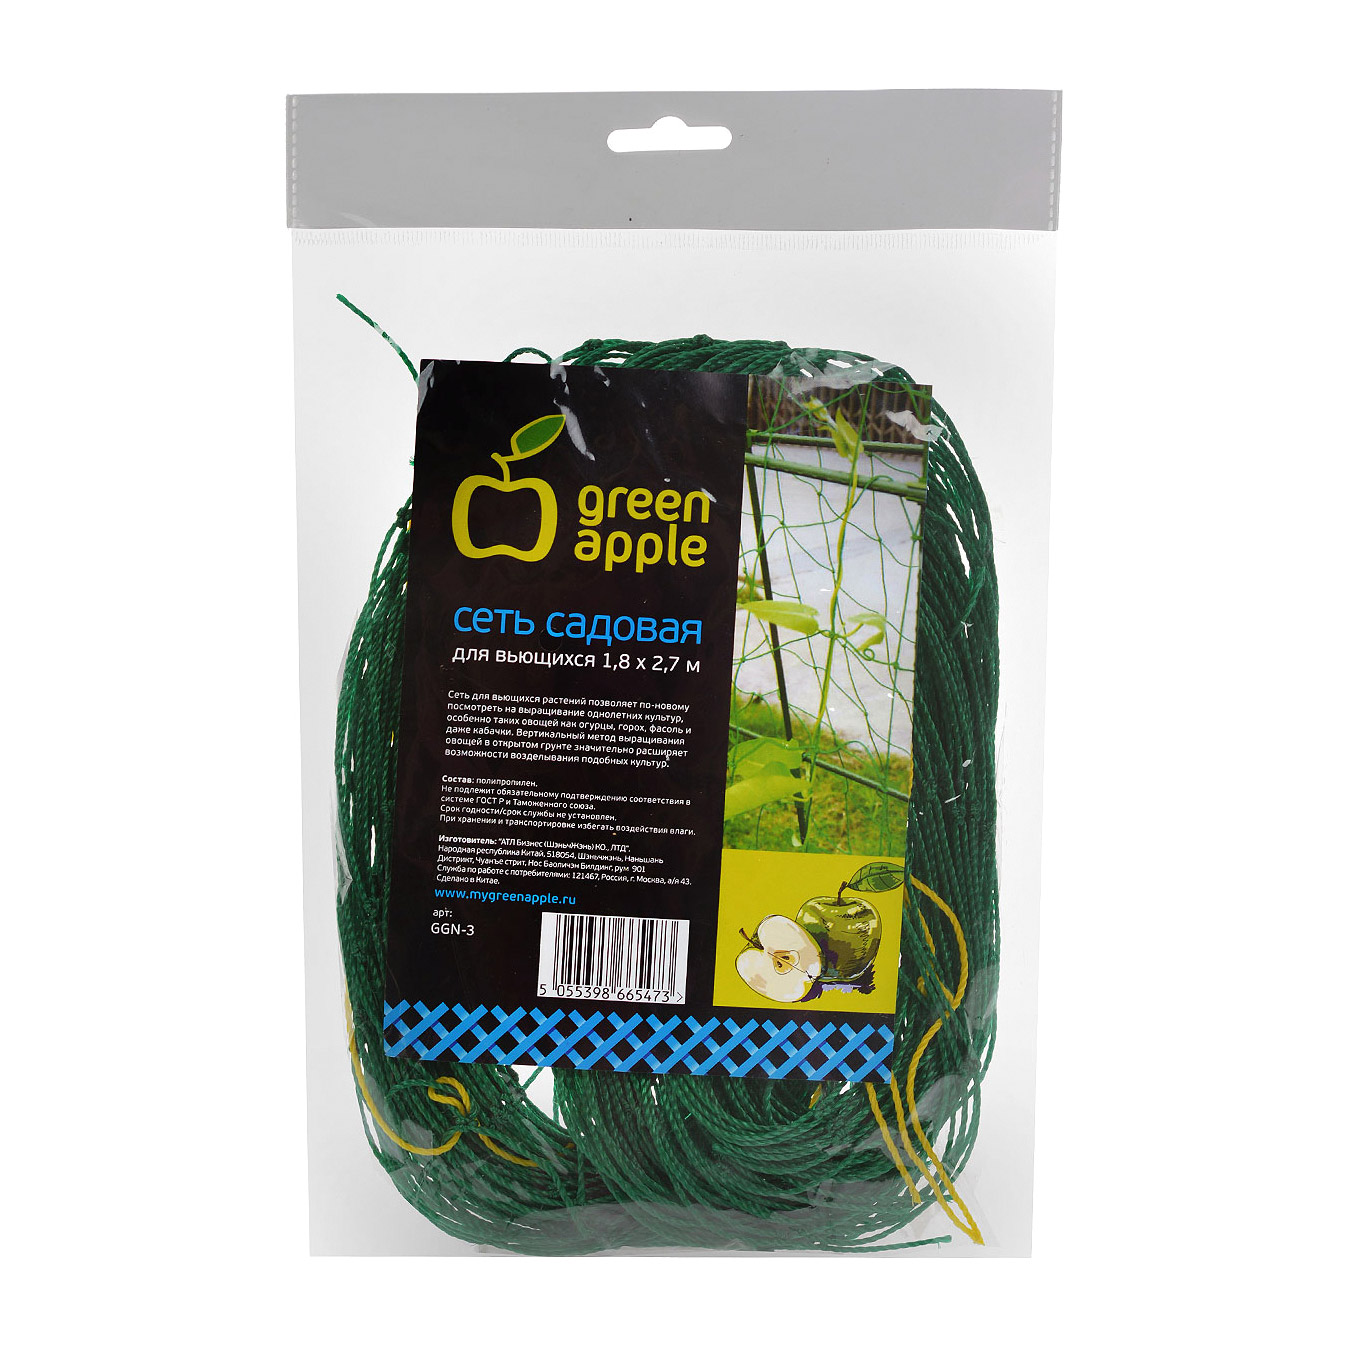 Сеть садовая Green apple GGN-3 для вьющихся 1,8х2,7 м